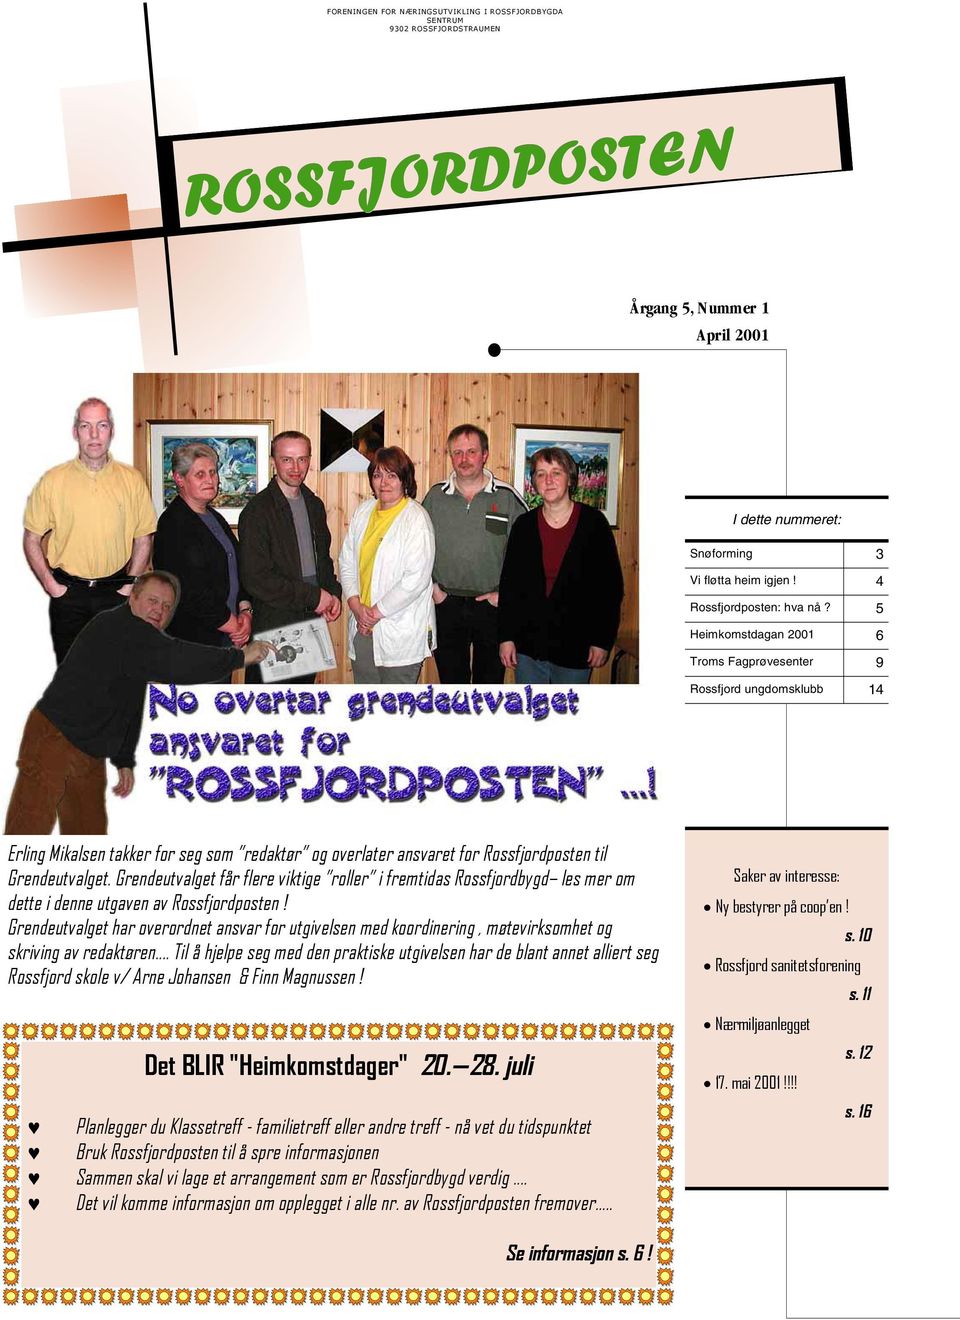 5 Heimkomstdagan 2001 6 Troms Fagprøvesenter 9 Rossfjord ungdomsklubb 14 Erling Mikalsen takker for seg som redaktør og overlater ansvaret for Rossfjordposten til Grendeutvalget.